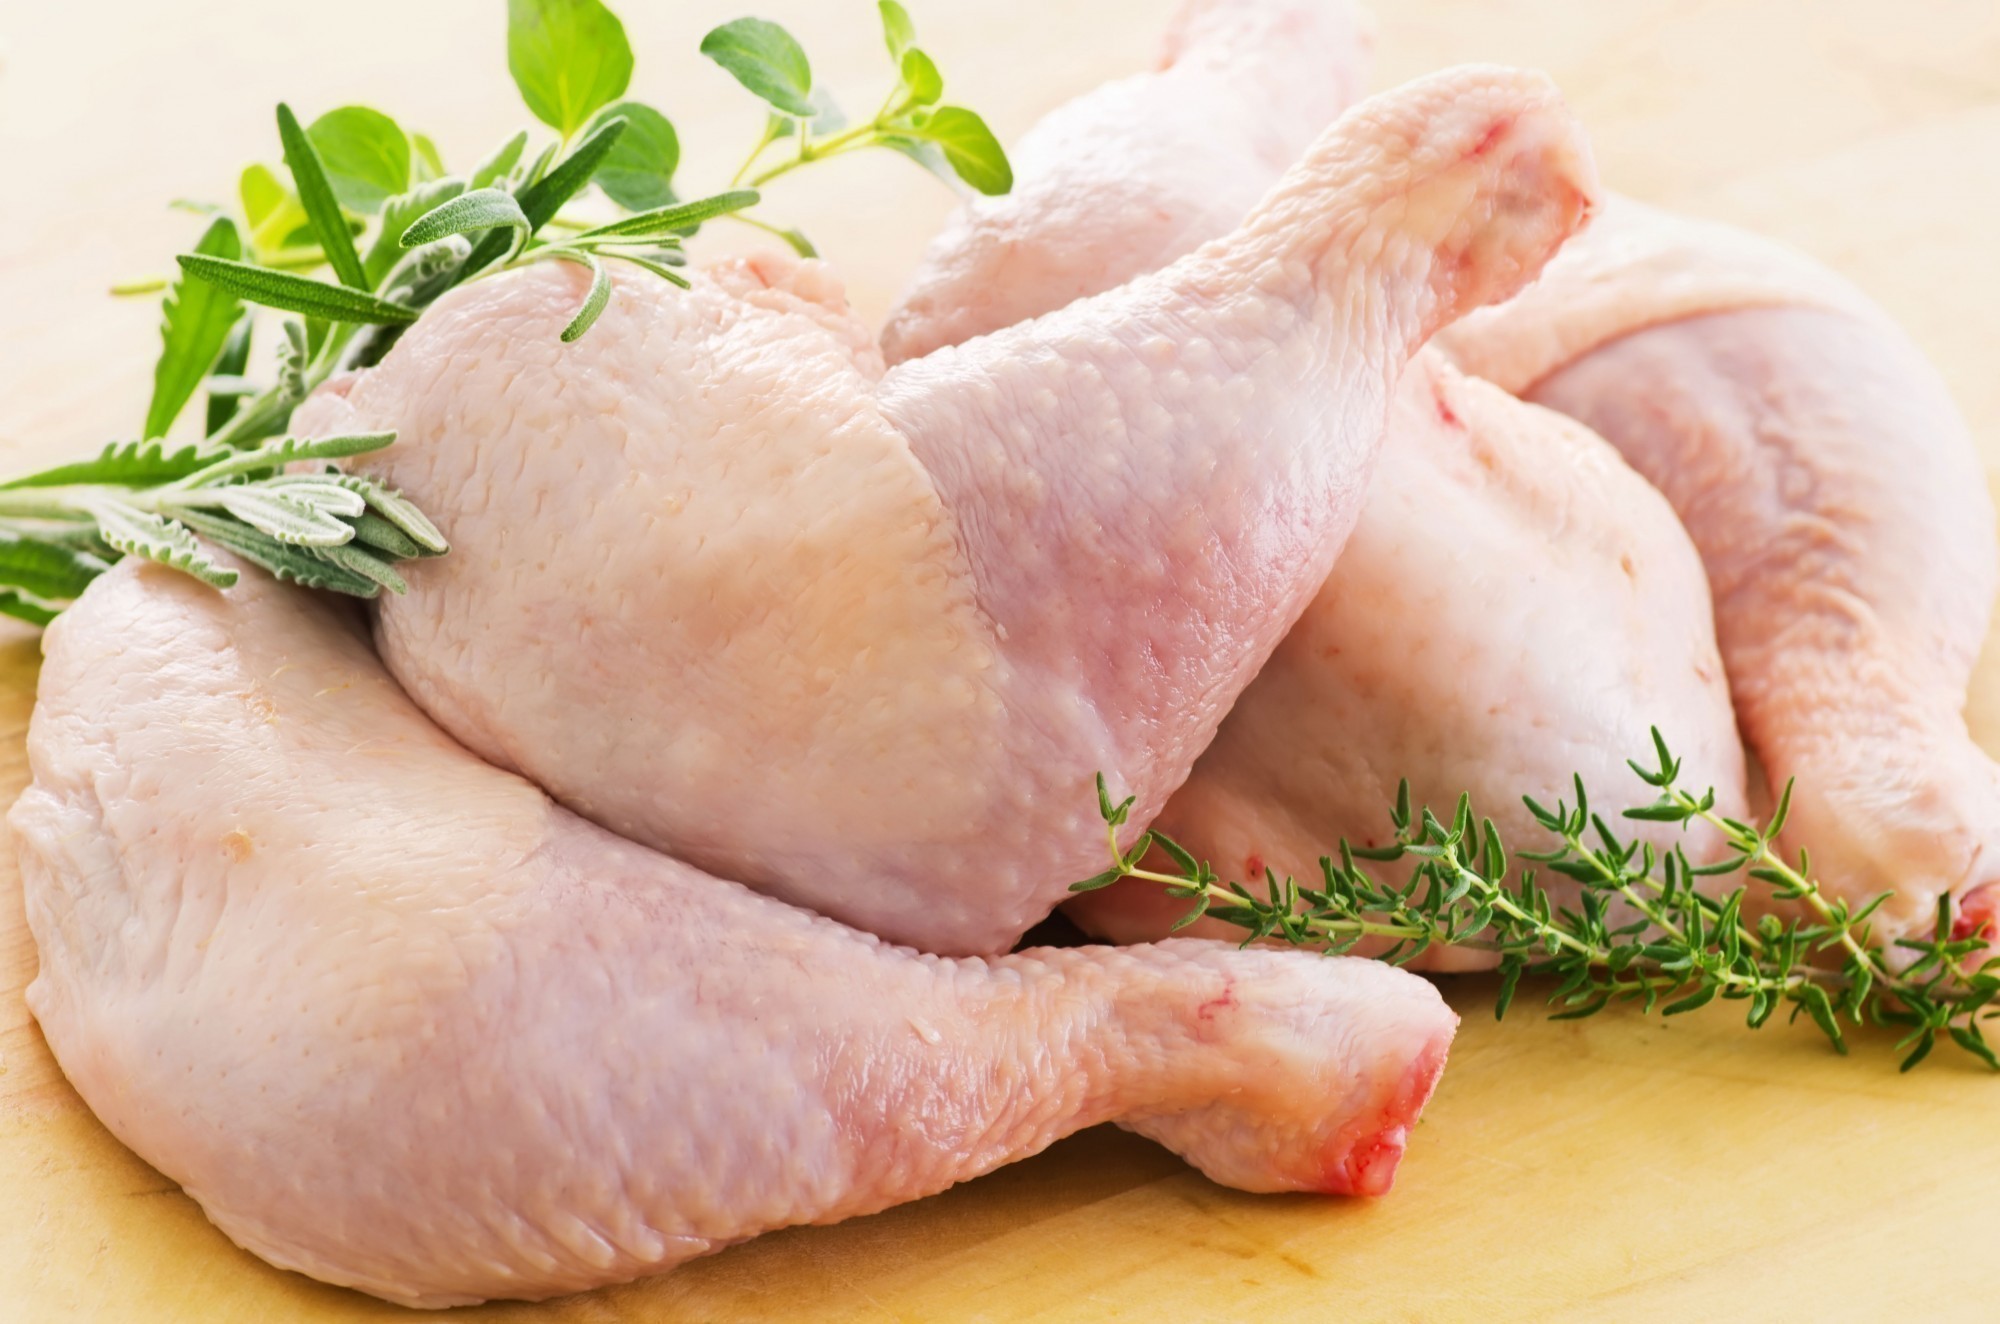 اضرار الافراط فى تناول الدجاج على صحة الإنسان اليوم السابع